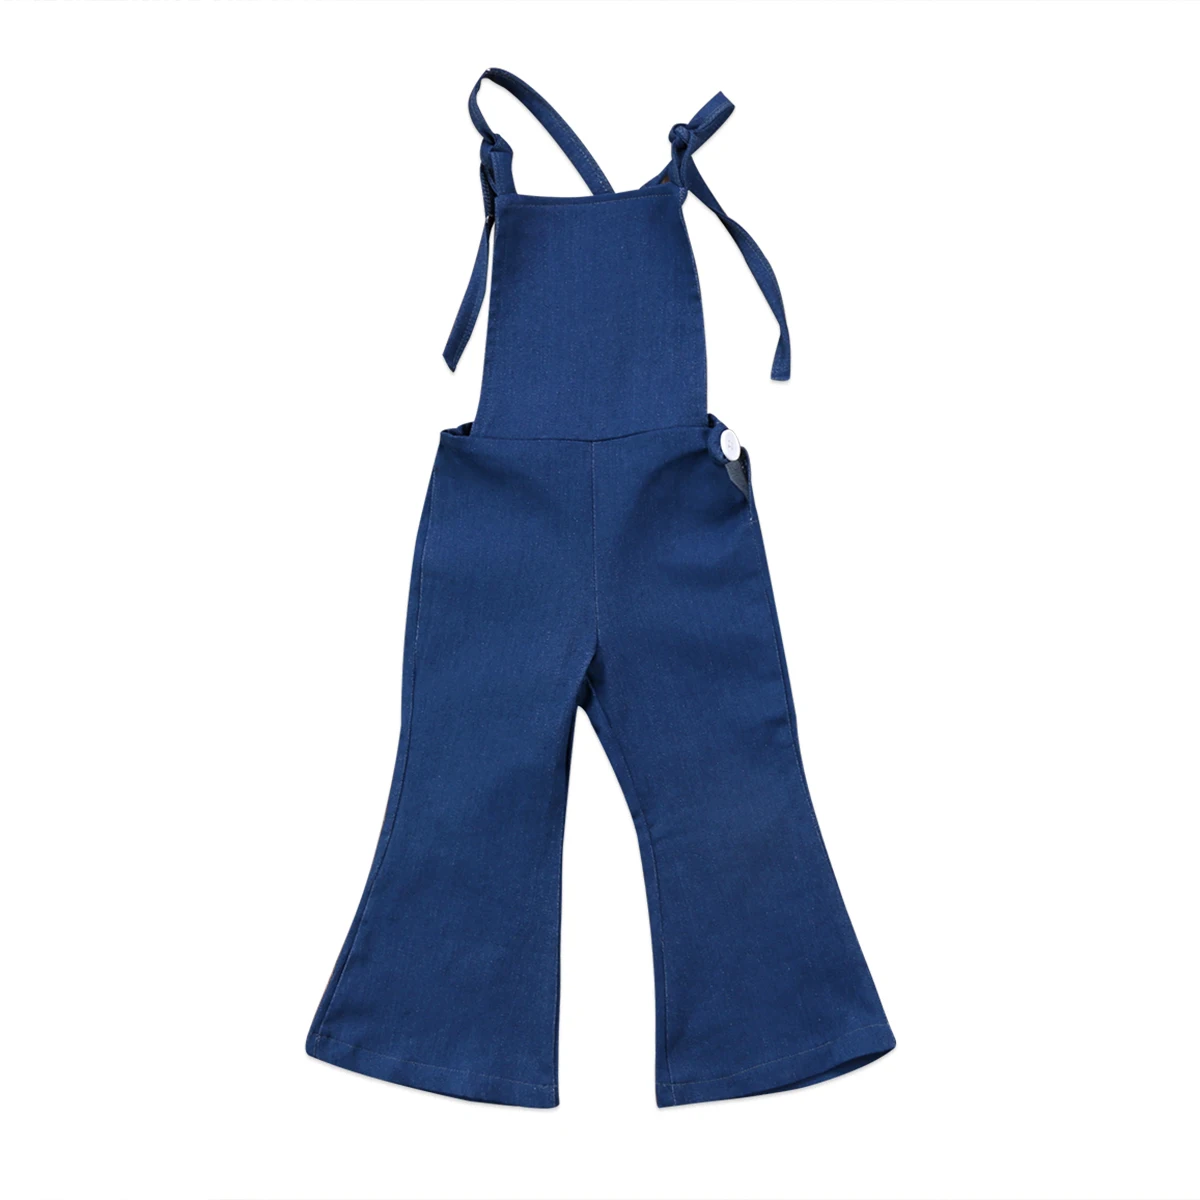 Новый модный сарафан без рукавов для маленьких девочек, джинсовый Рабочий Комбинезон, джемпер, брюки нижнего белья, летняя одежда